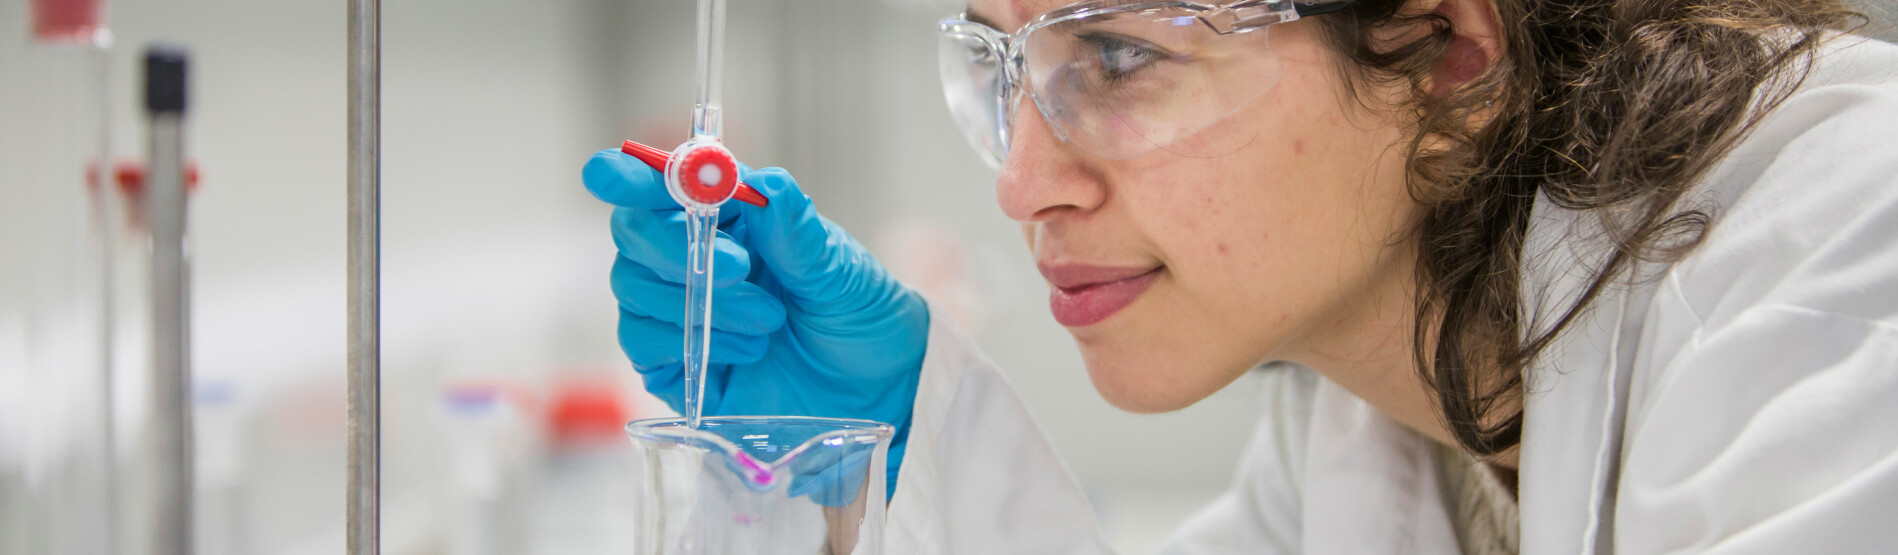 Female scientist examining test tube